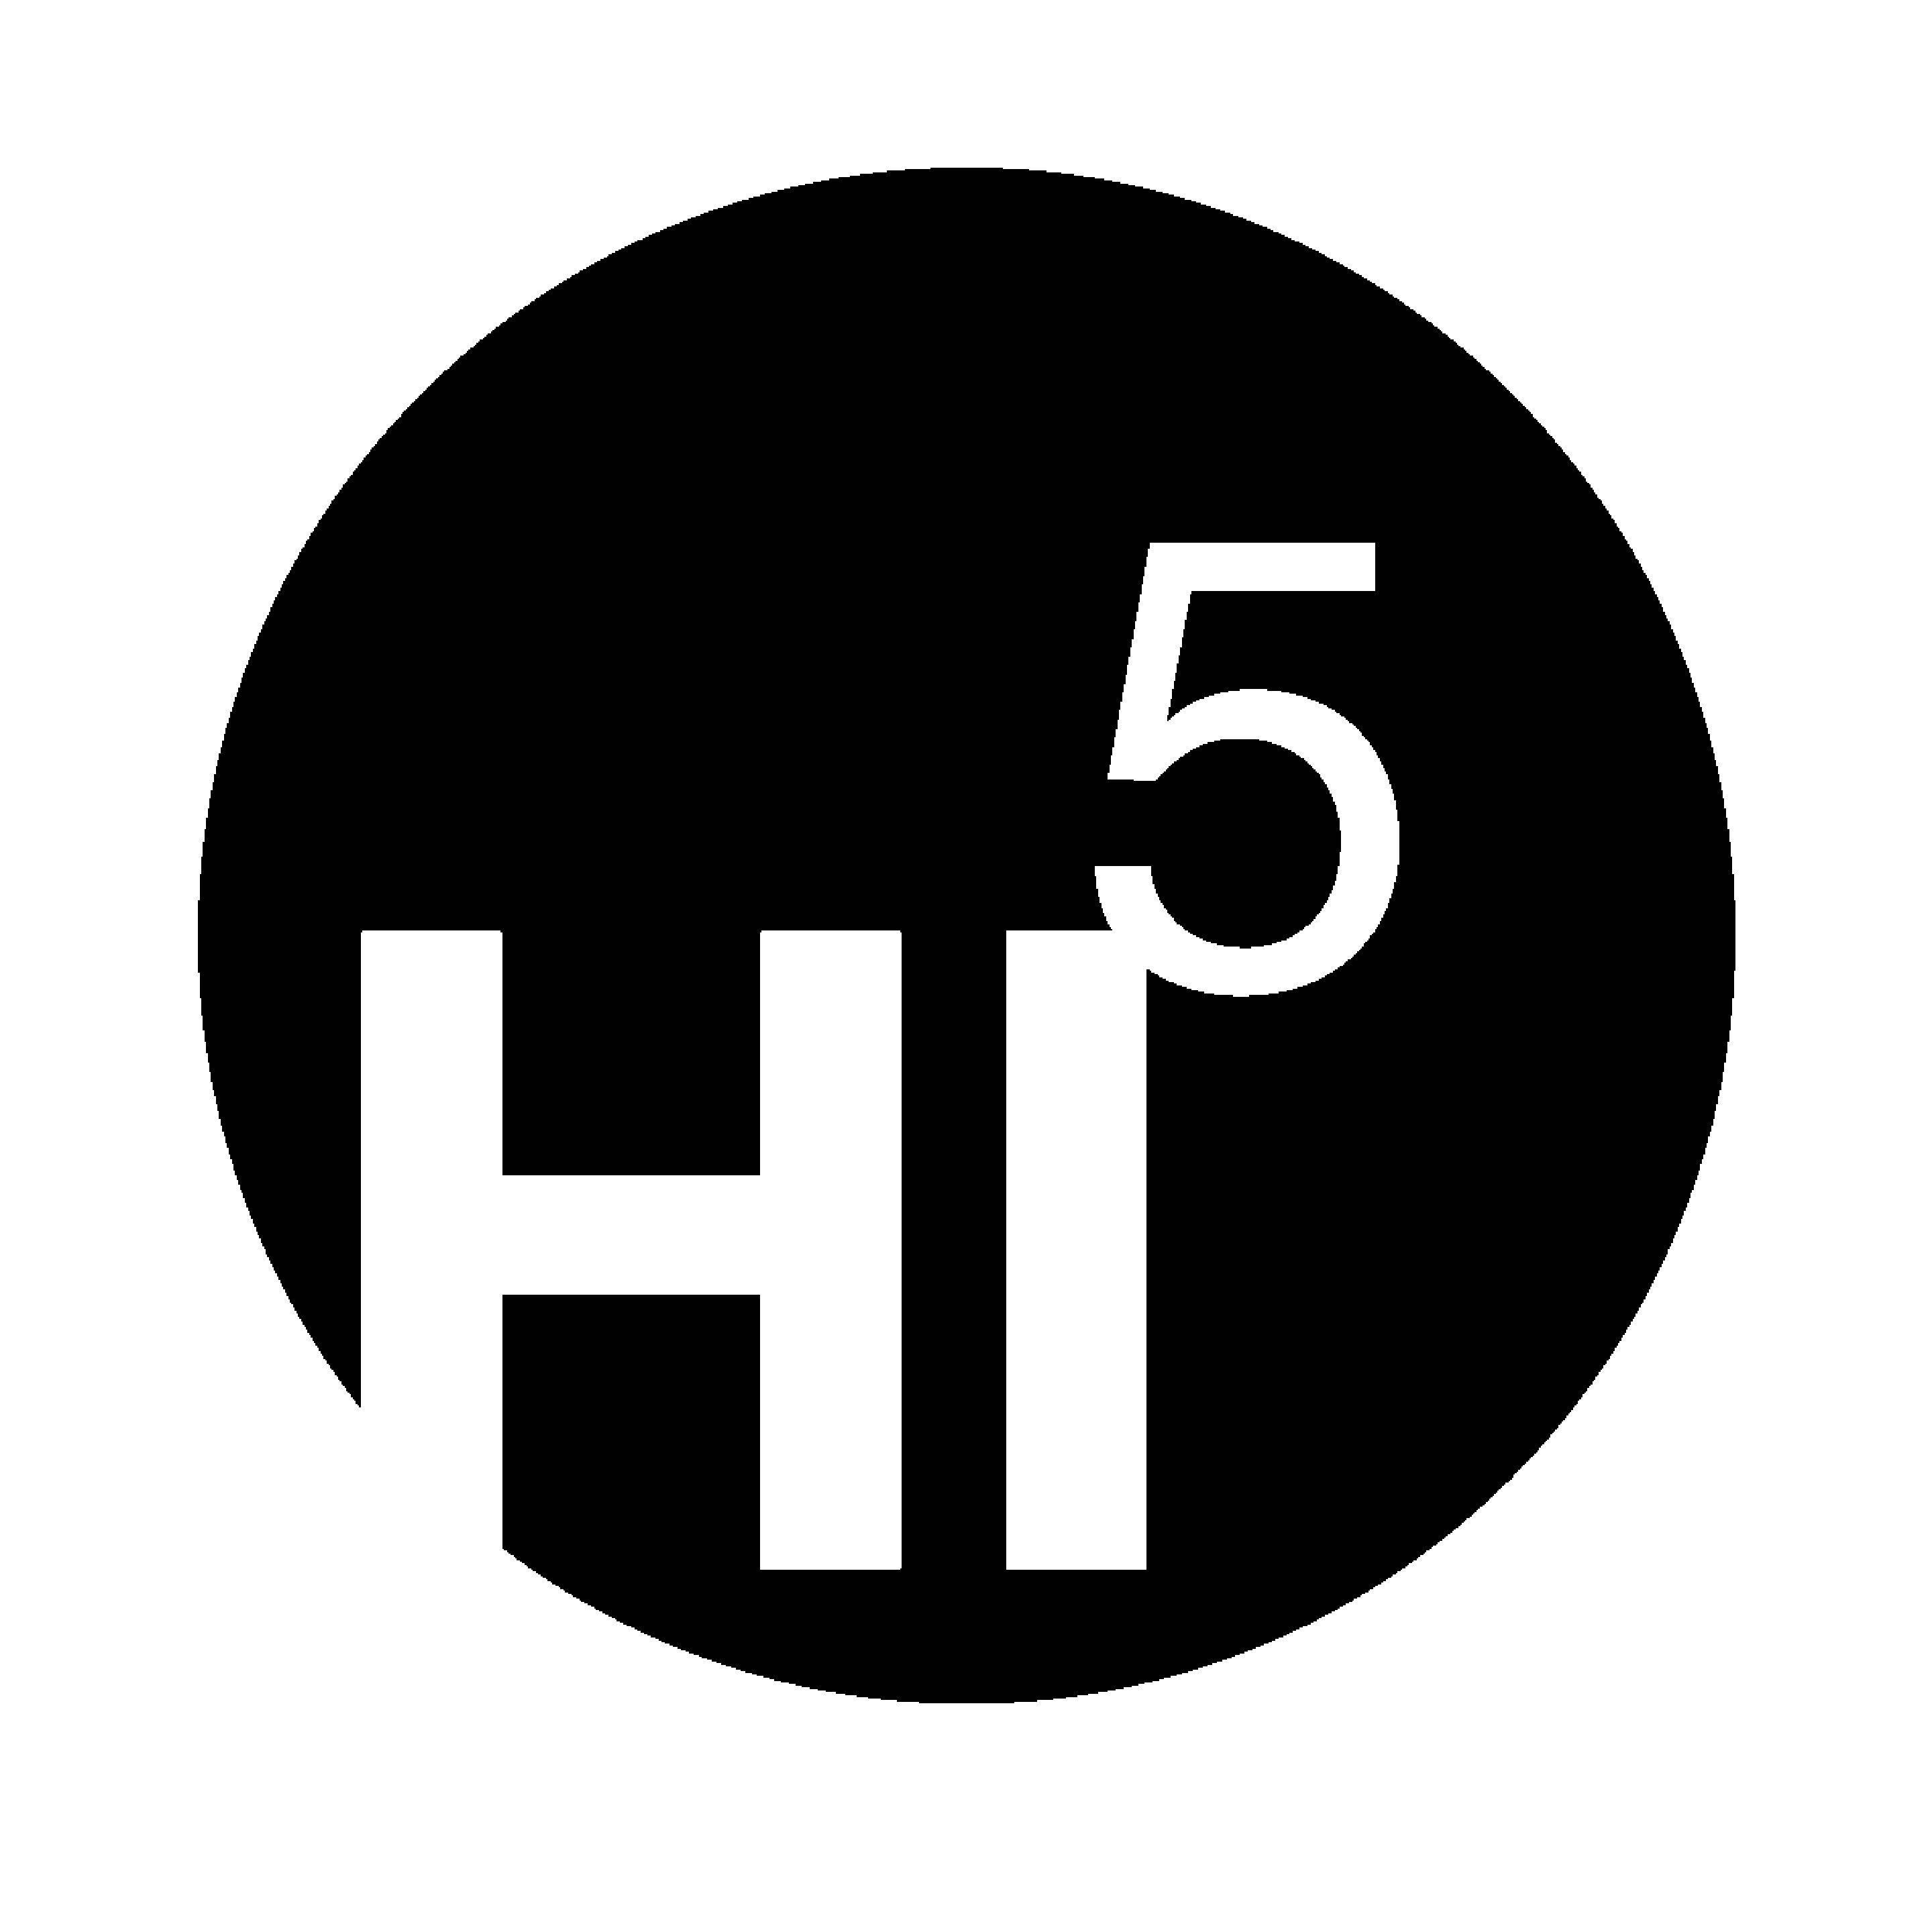 TIF Logo - Logos / HI 5 Logo.tif